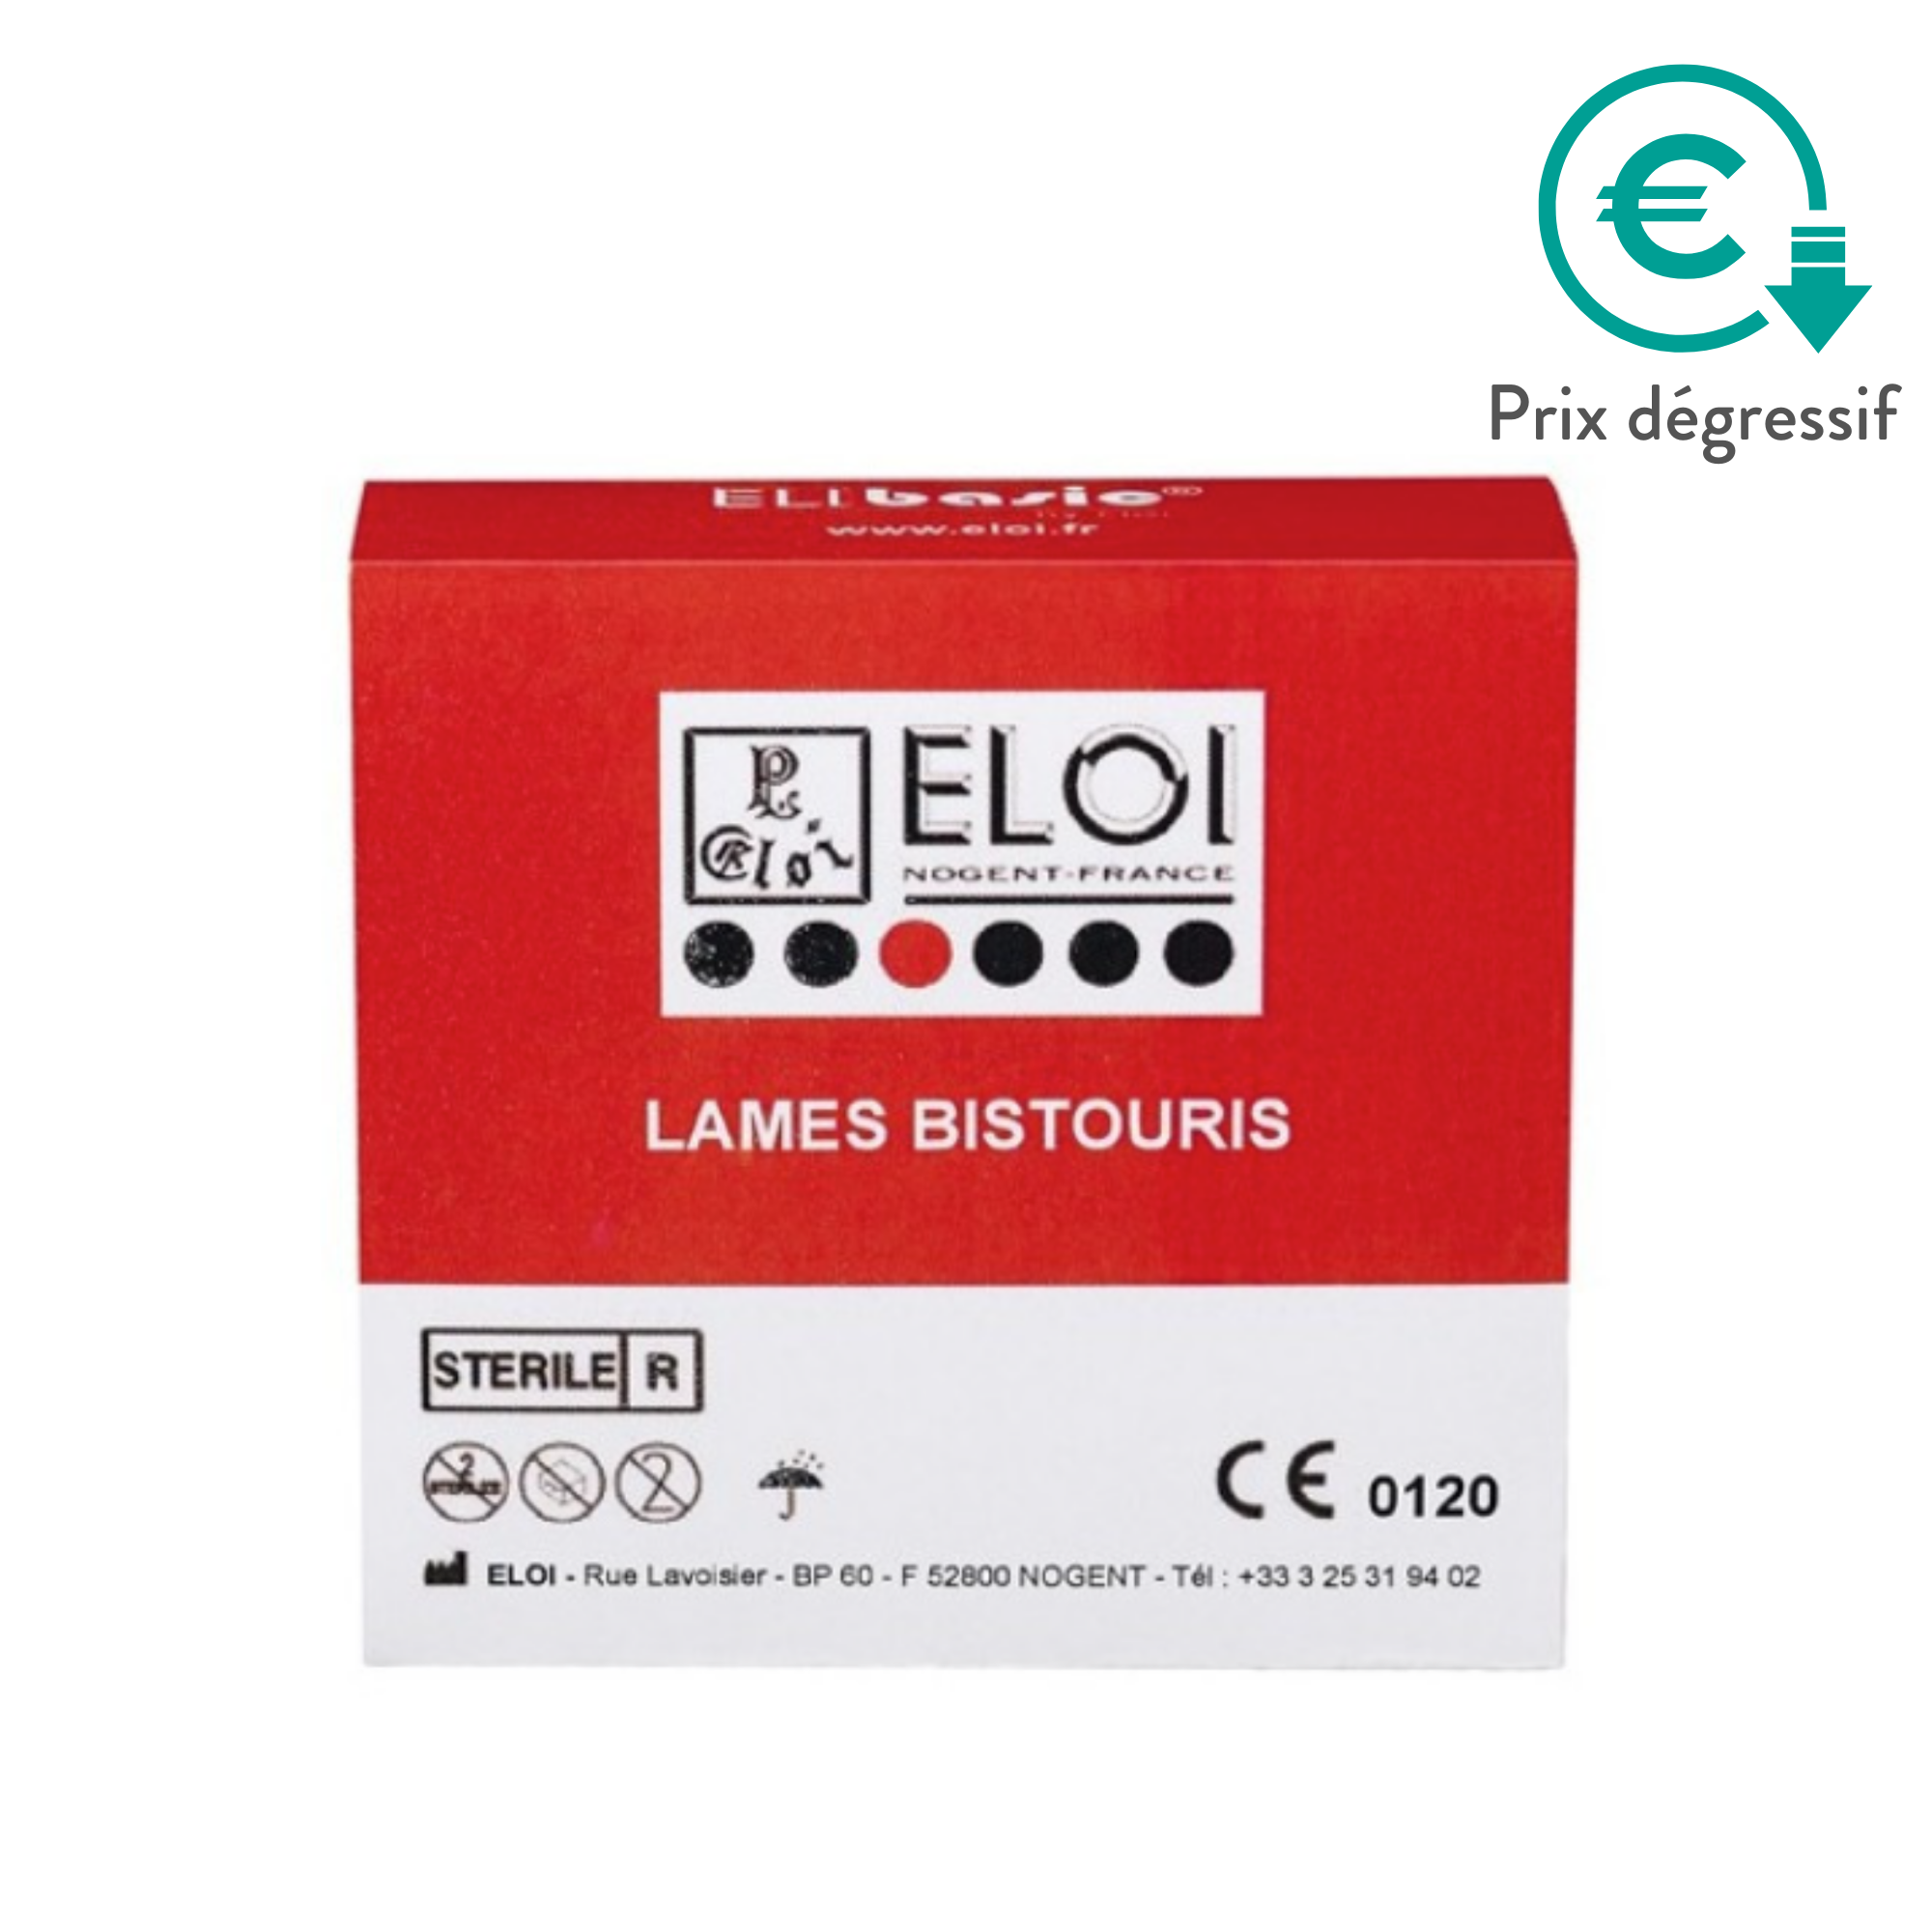 100 lames de bistouris stériles - Elibasic by Eloi